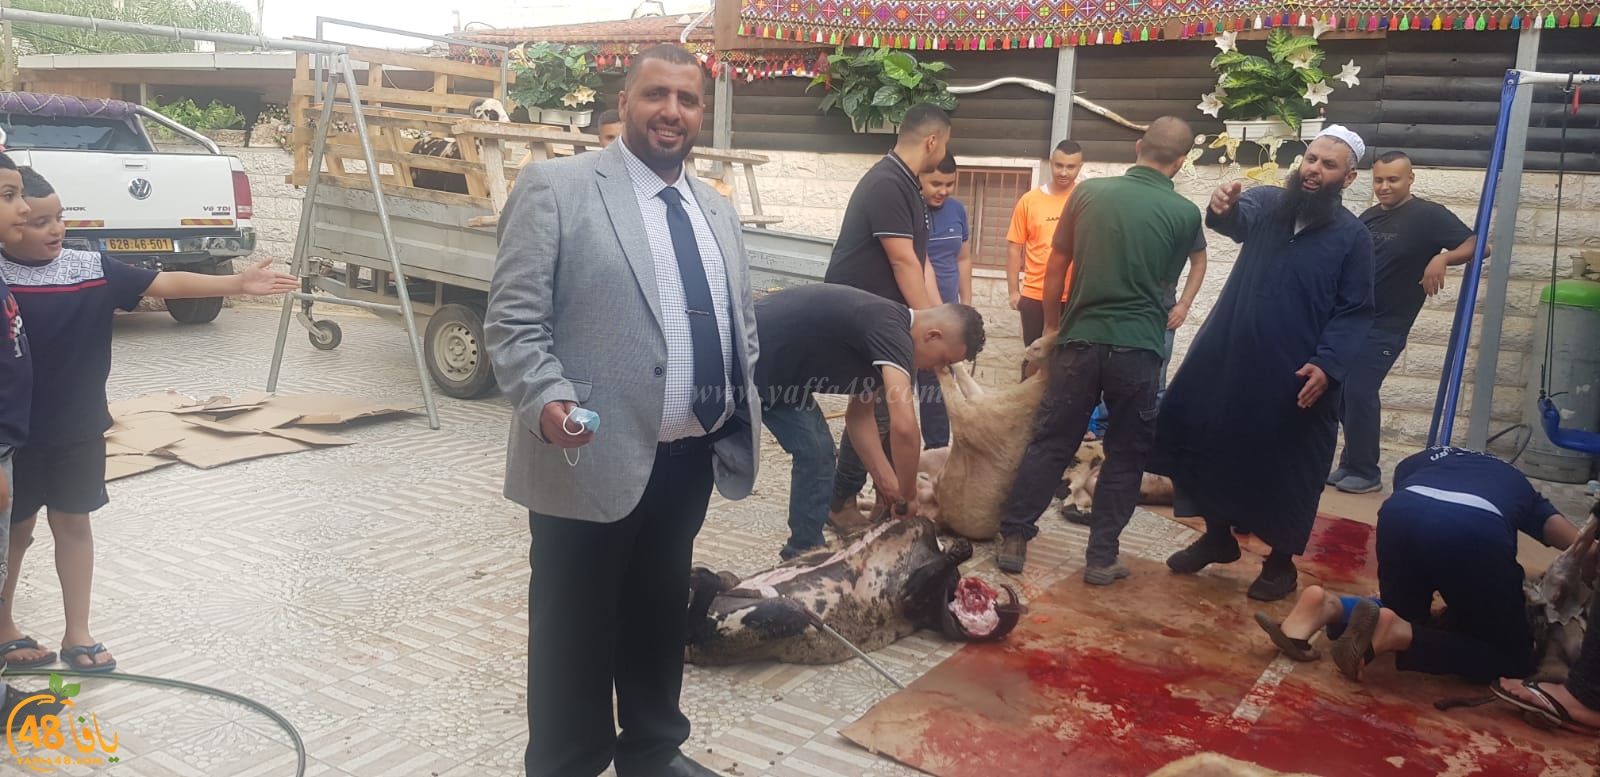  بالصور: أجواء عيد الأضحى المبارك وذبح الأضاحي في يافا، اللد والرملة